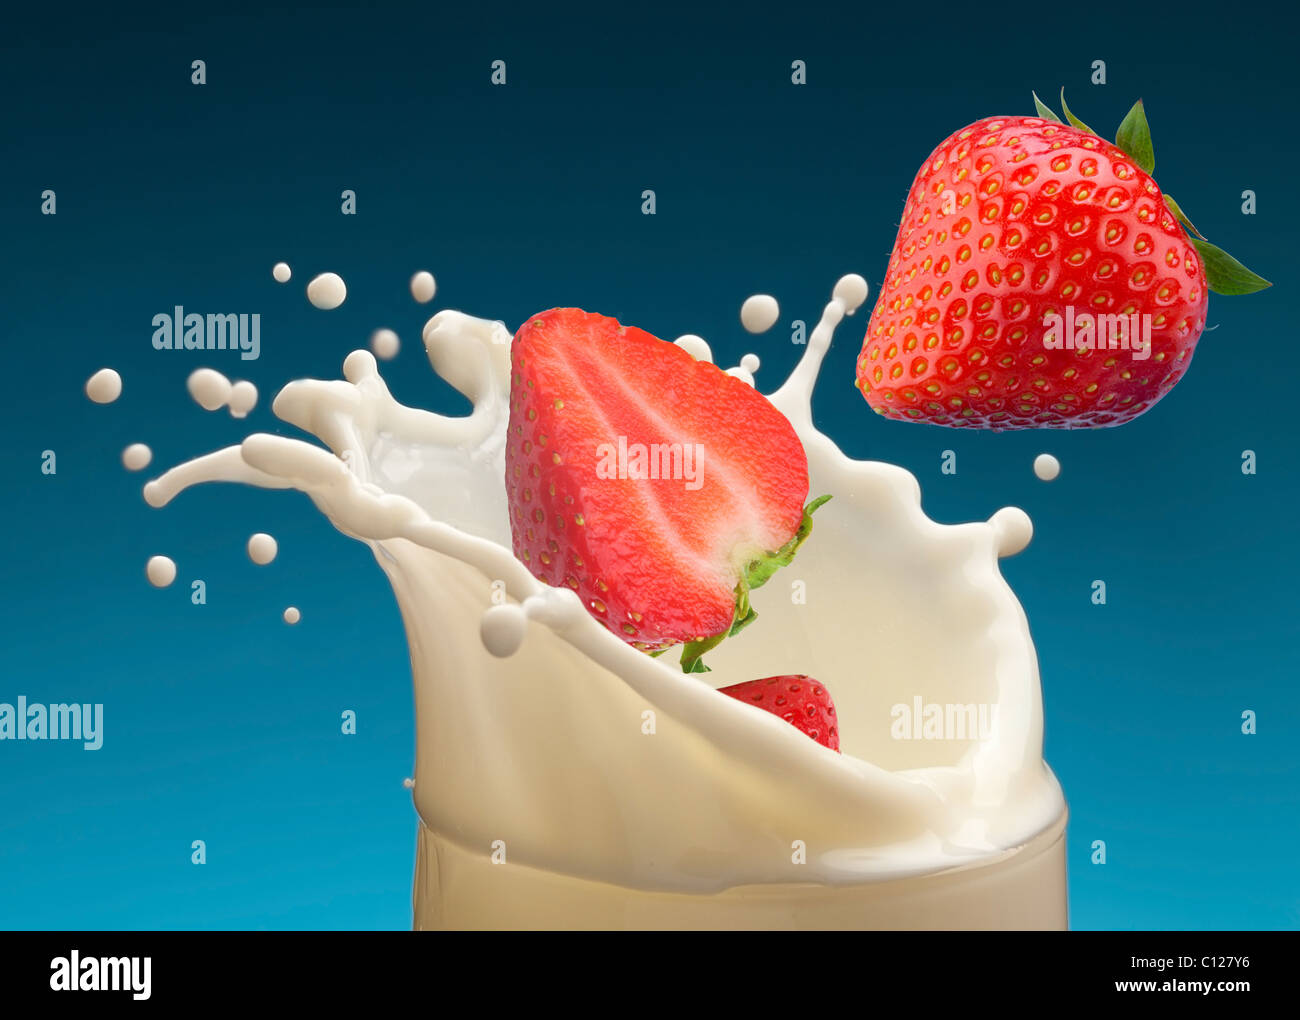 Spritzer Milch, verursacht durch fallen in eine Reife Erdbeere. Isoliert auf einem blauen Hintergrund. Stockfoto